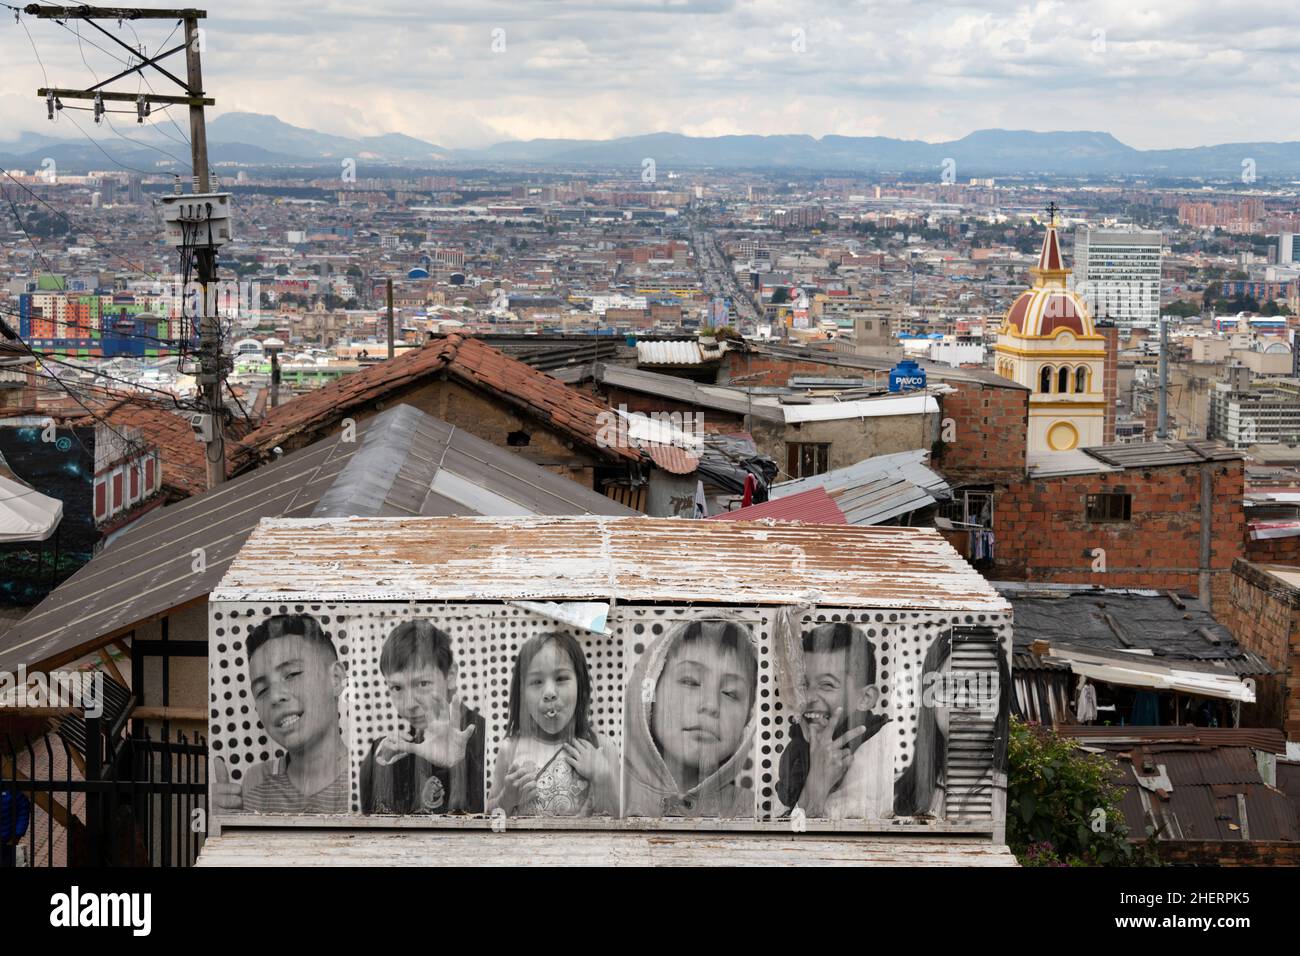 Art de rue sur les murs de maison dans le quartier autrefois célèbre de Barrio Egipto, Bogota, Colombie, Amérique du Sud.Visites touristiques maintenant. Banque D'Images